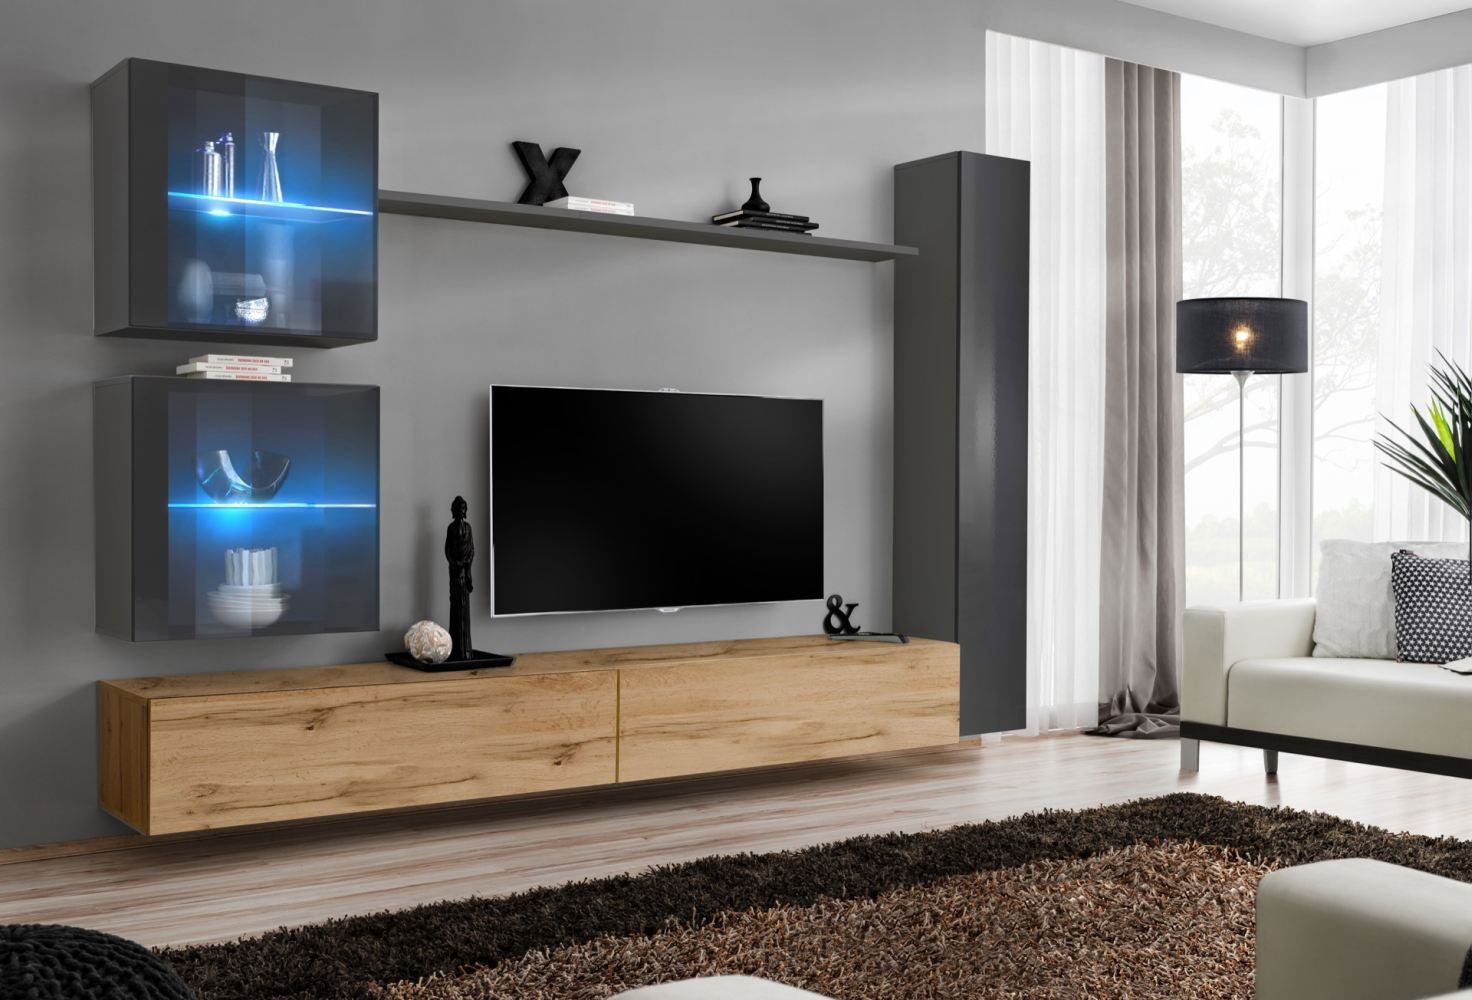 Hangelement met twee TV-onderkasten Balestrand 288, kleur: grijs / eiken Wotan - afmetingen: 180 x 280 x 40 cm (H x B x D), met push-to-open functie